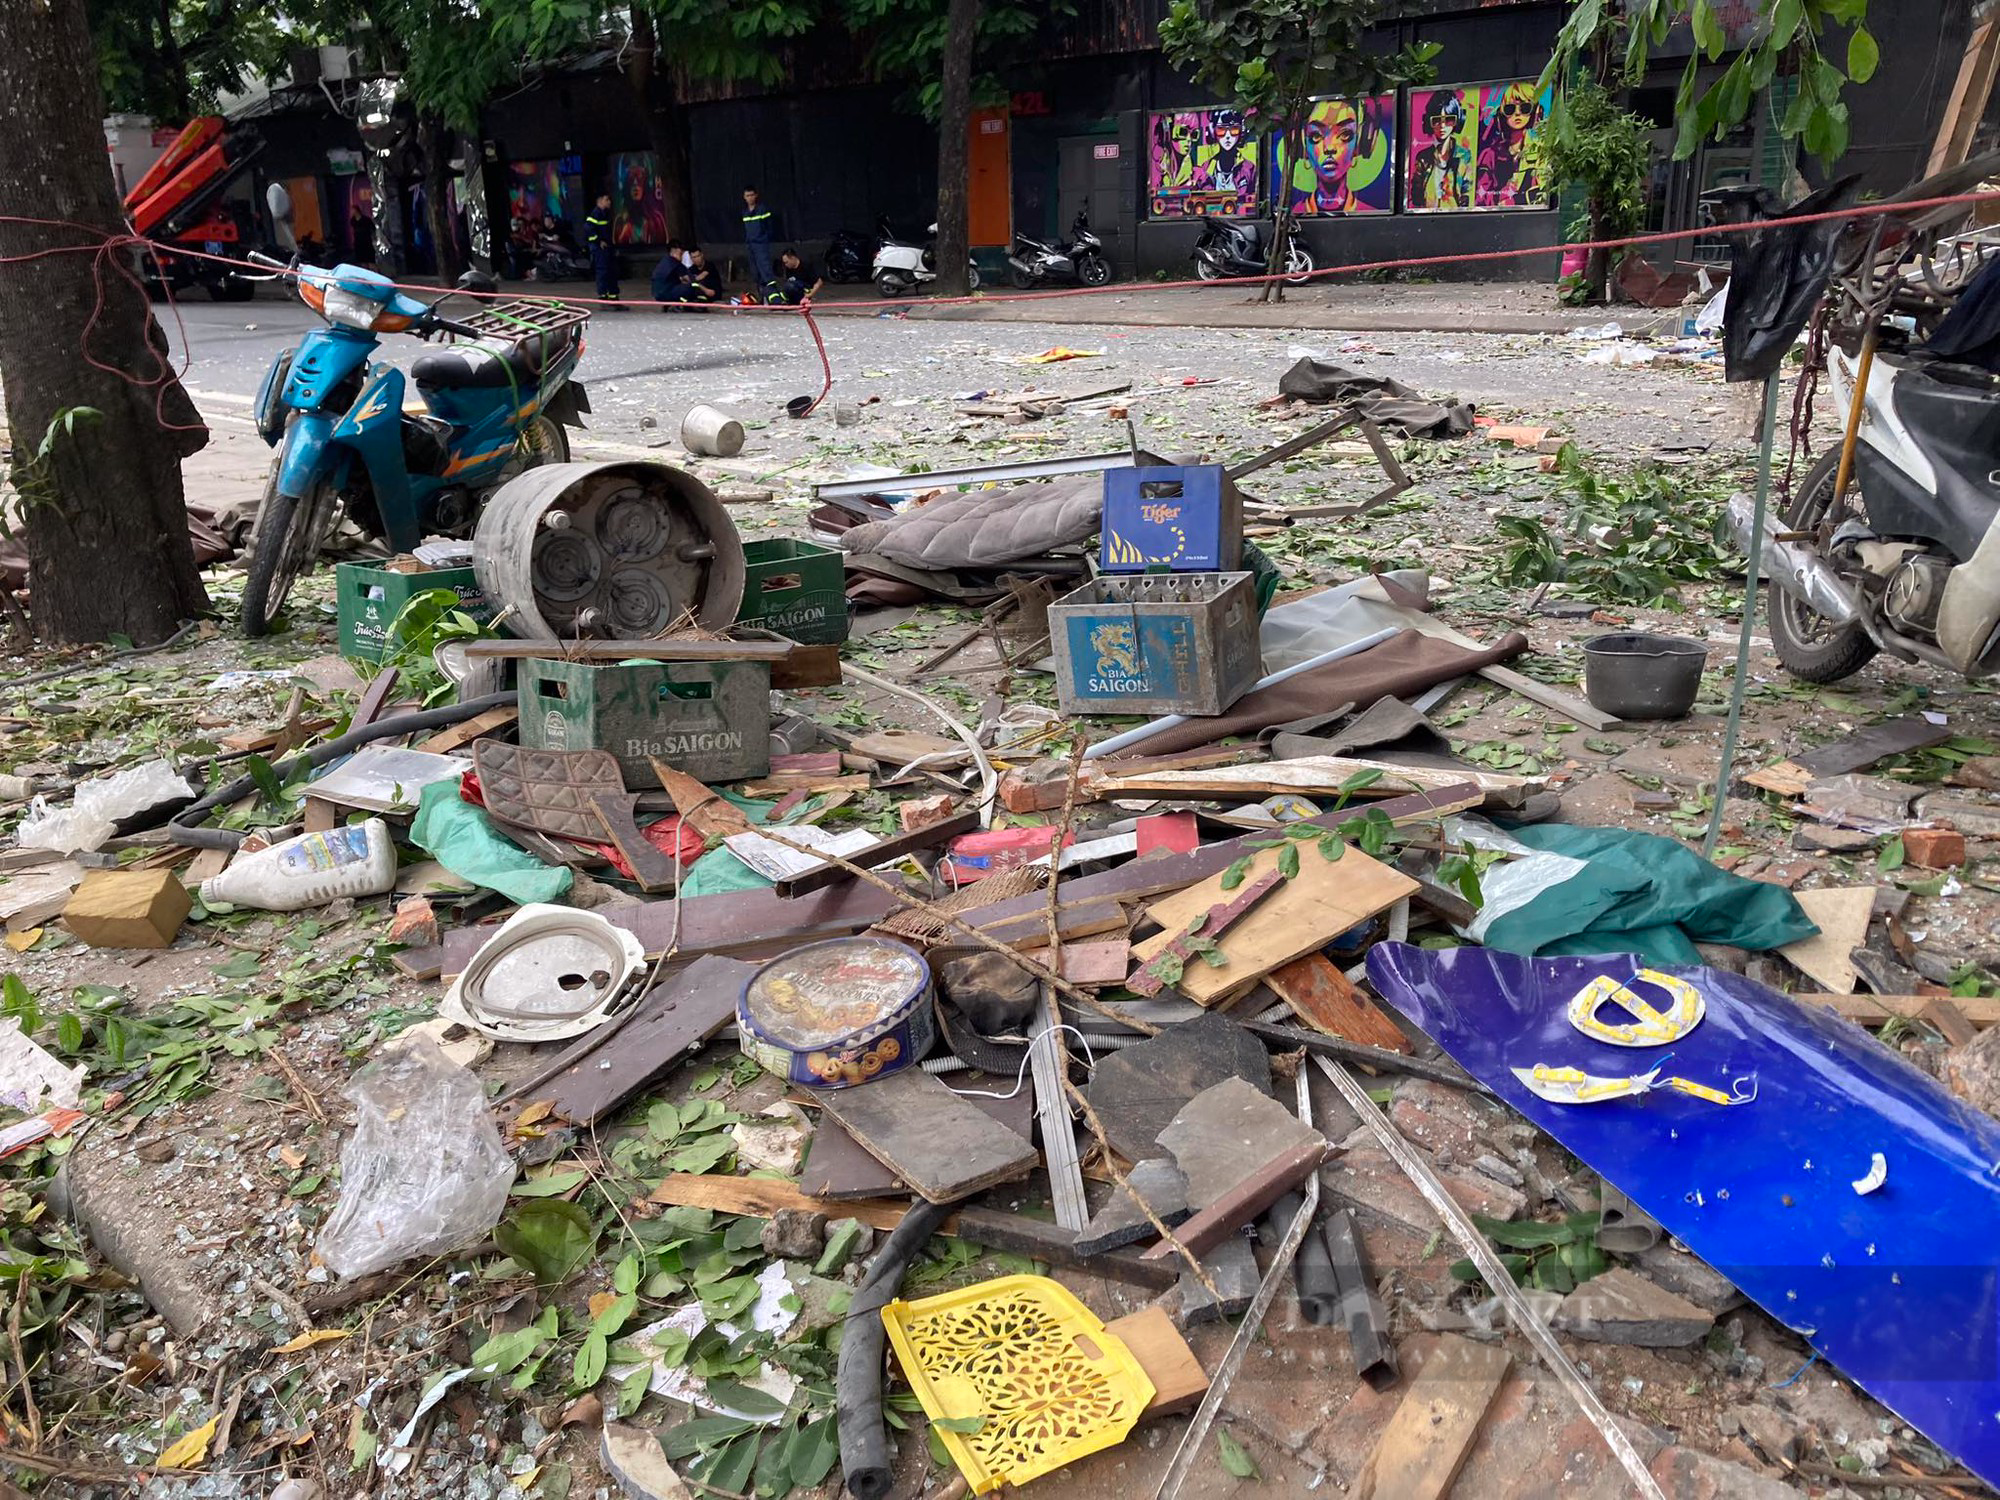 Hiện trường tan hoang sau nổ lớn cực lớn quán lẩu ở phố Yên Phụ, nhiều người bị thương nặng - Ảnh 7.